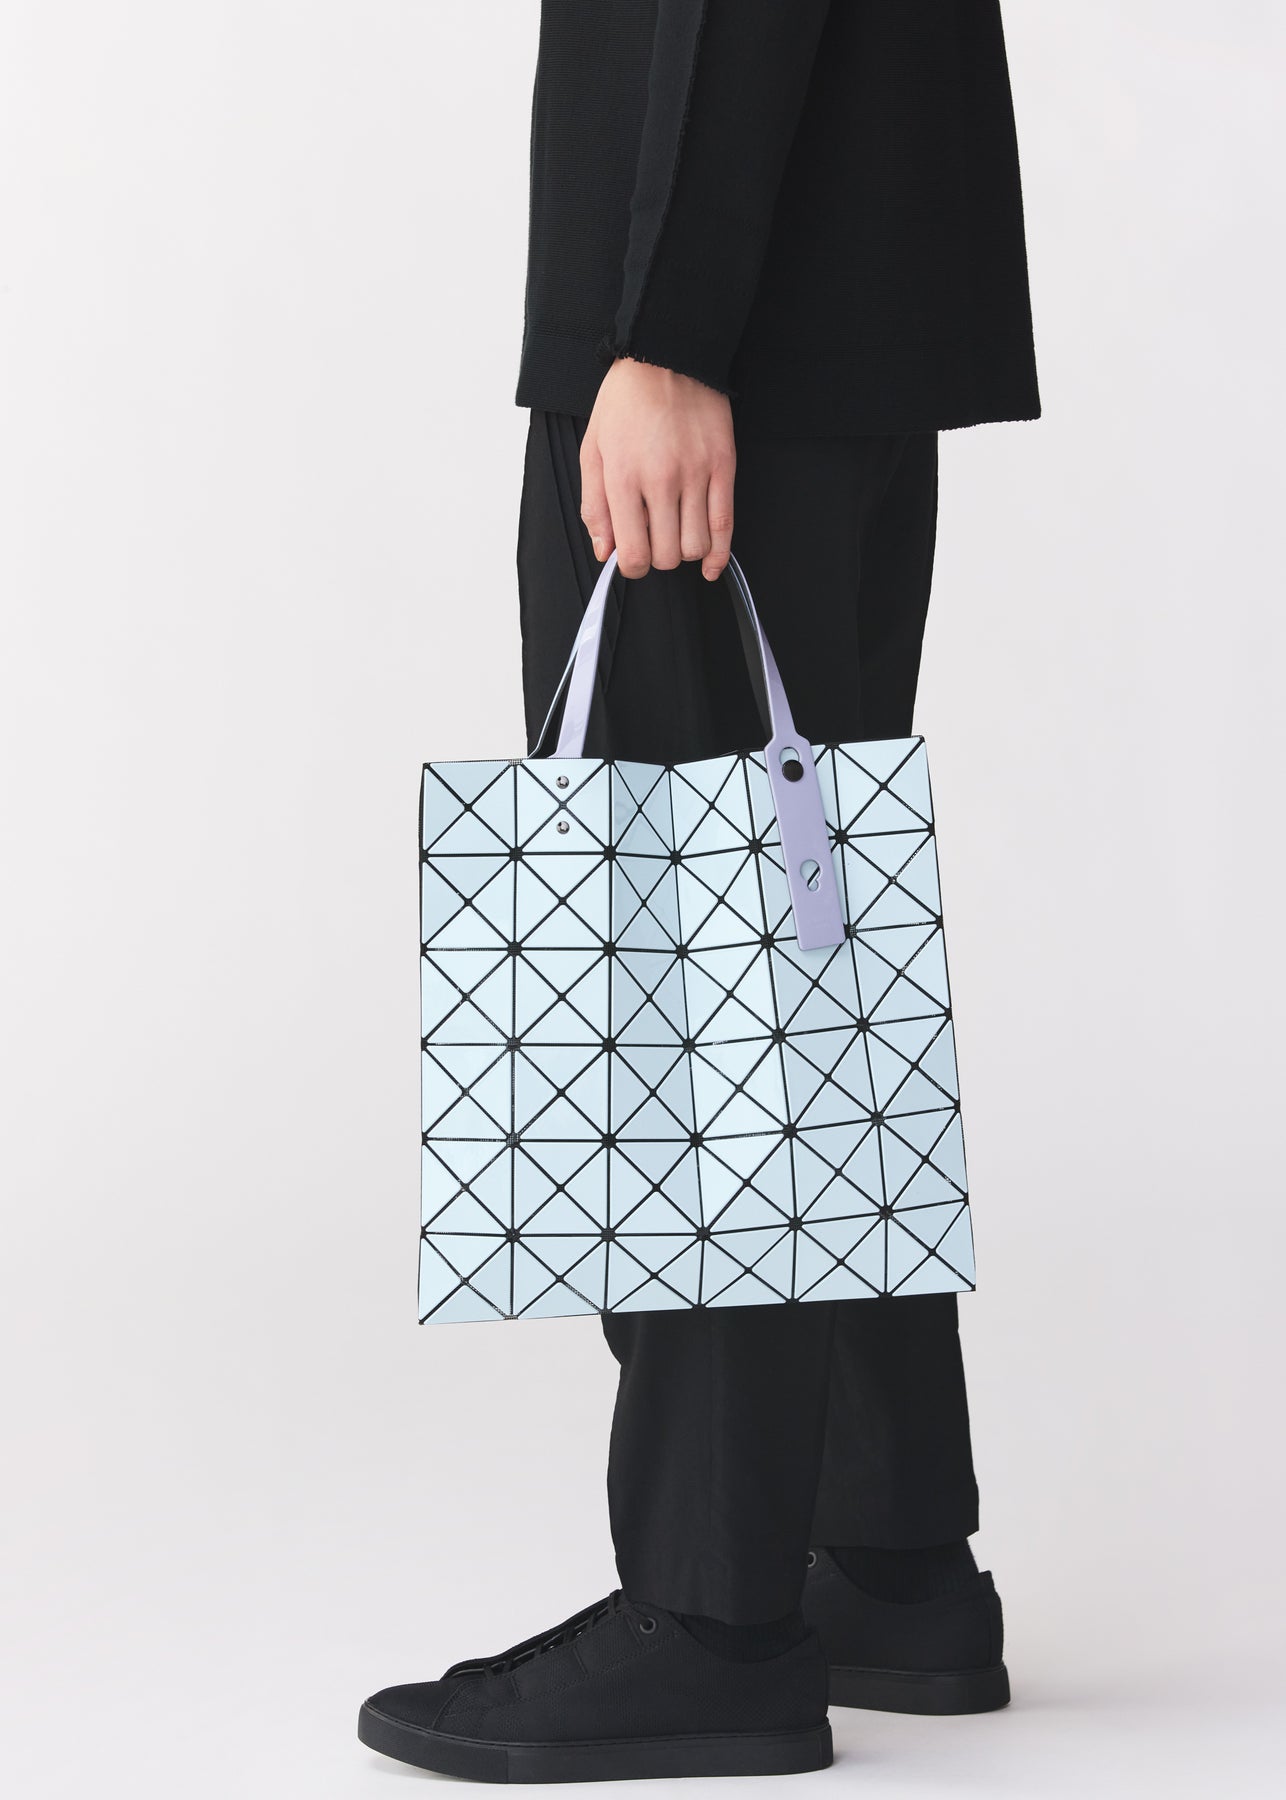 BAO BAO ISSEY MIYAKE Lucent Gloss Tote Bag – MoMA Design Store